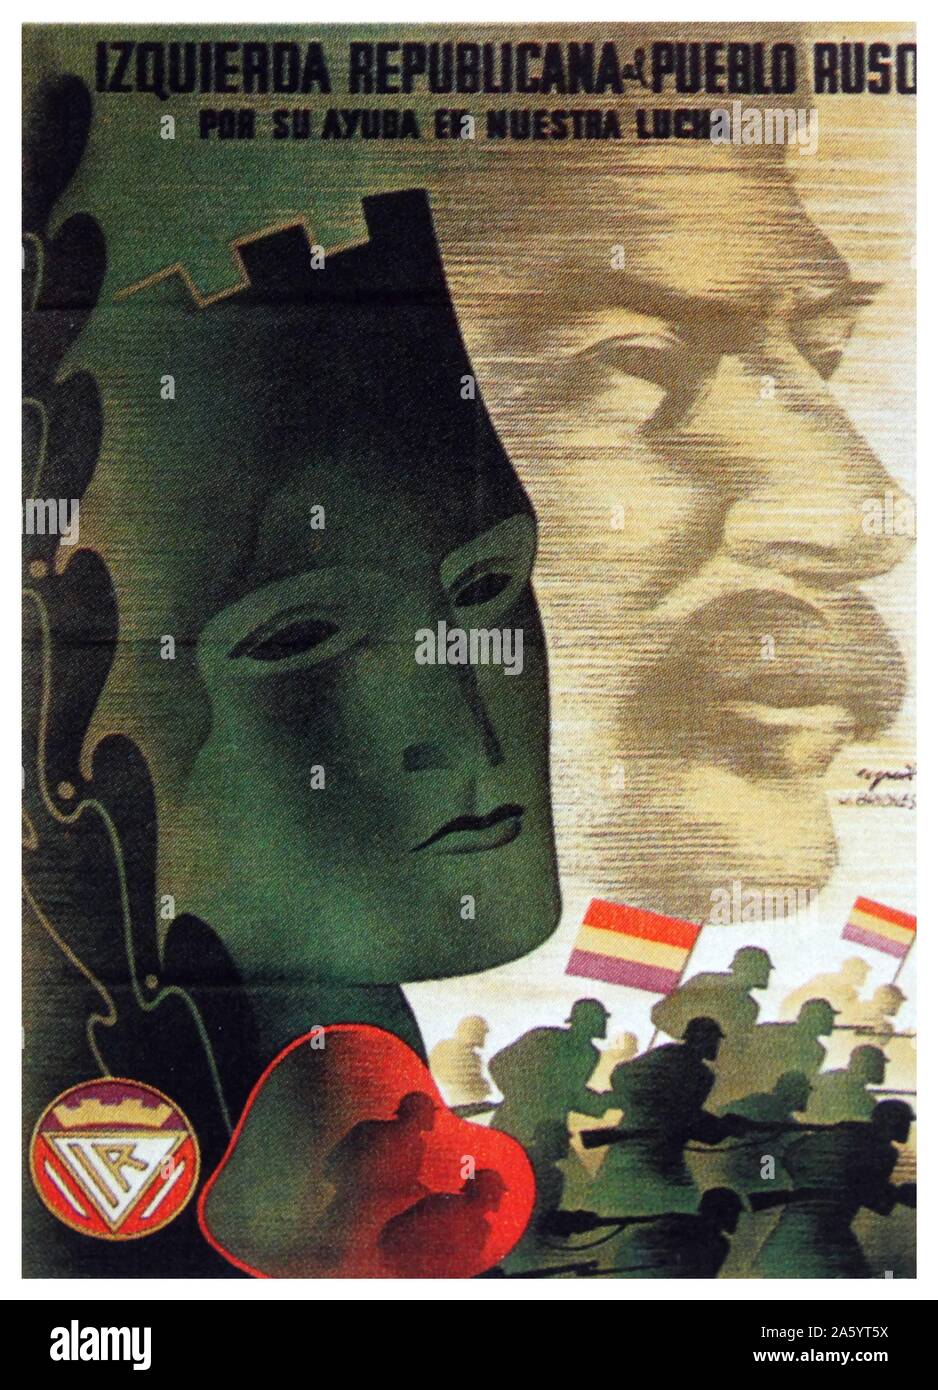 Russland und seine Hilfe in unserem Kampf! Ein republikanischer Poster aus dem spanischen Bürgerkrieg, zeigt ein Bild von Stalin Stockfoto